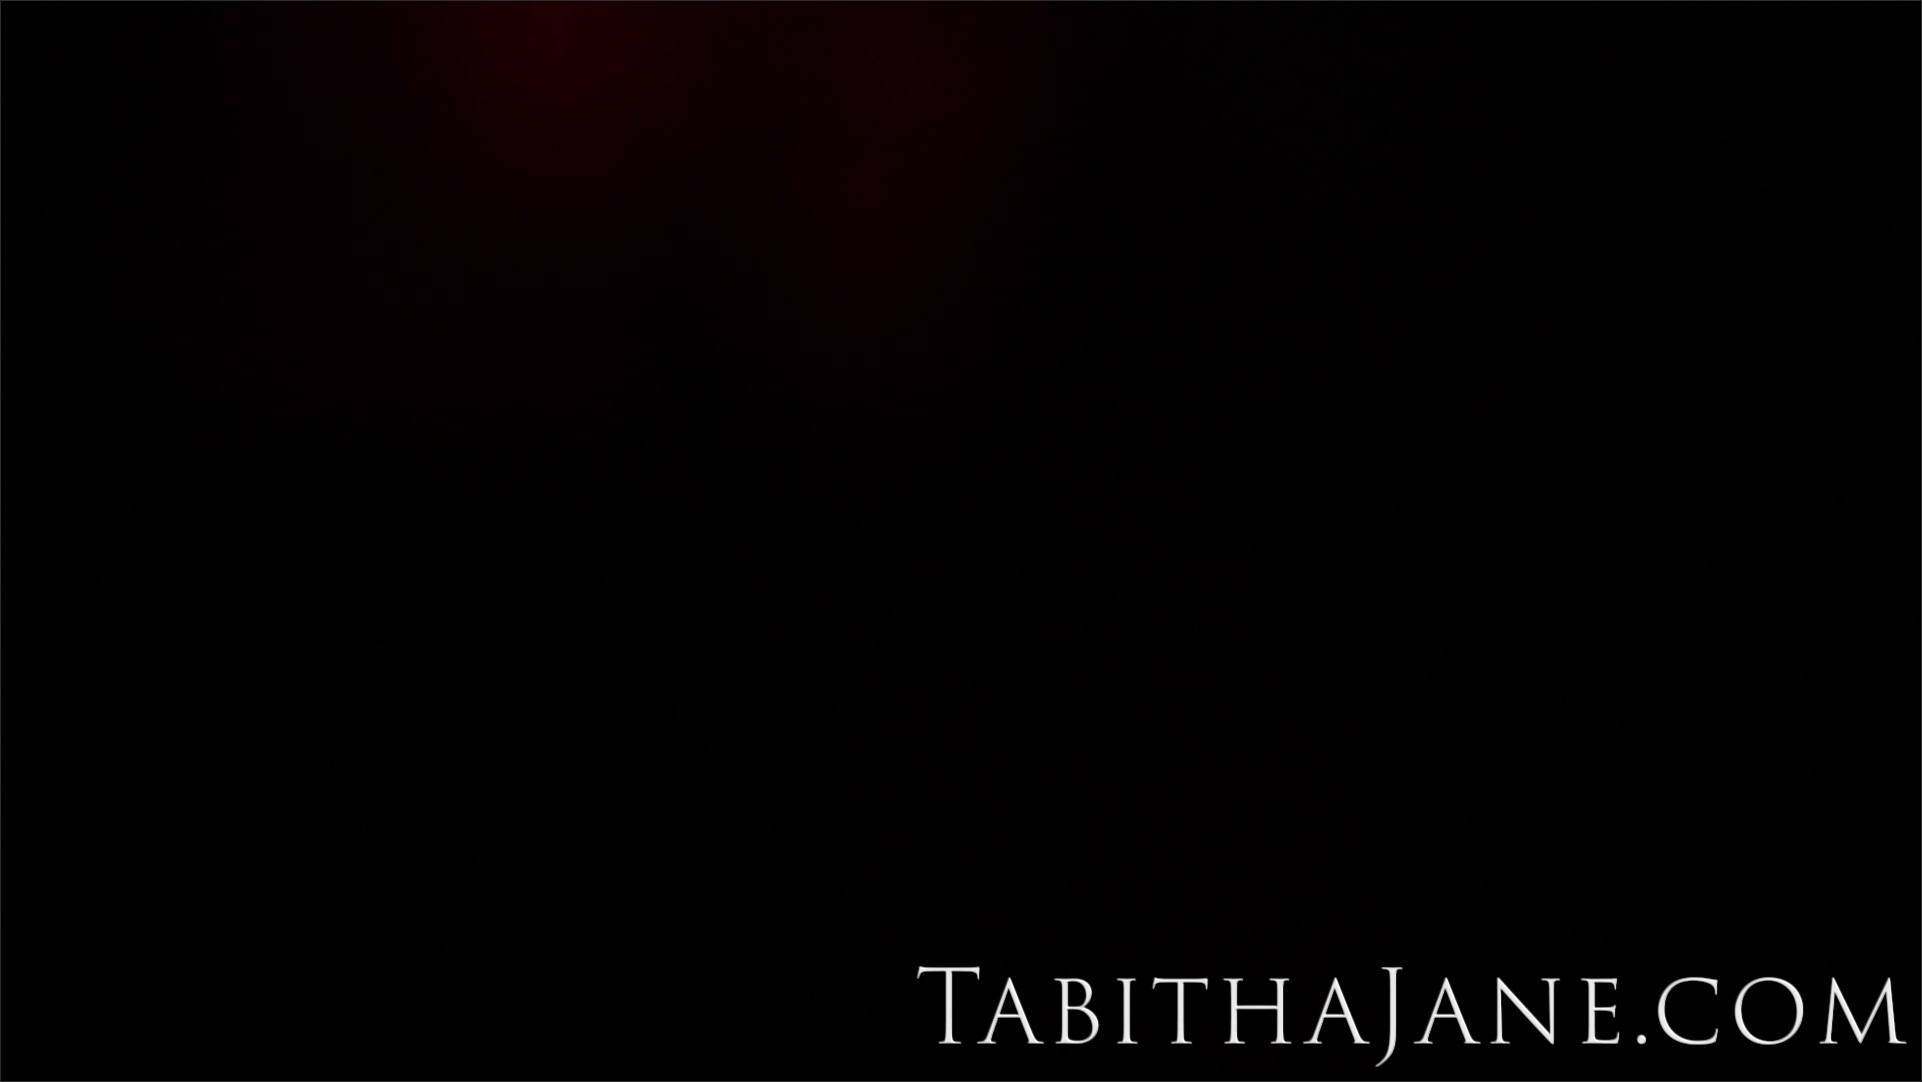 The Tabitha Jane V Day Ass Worship mp 4